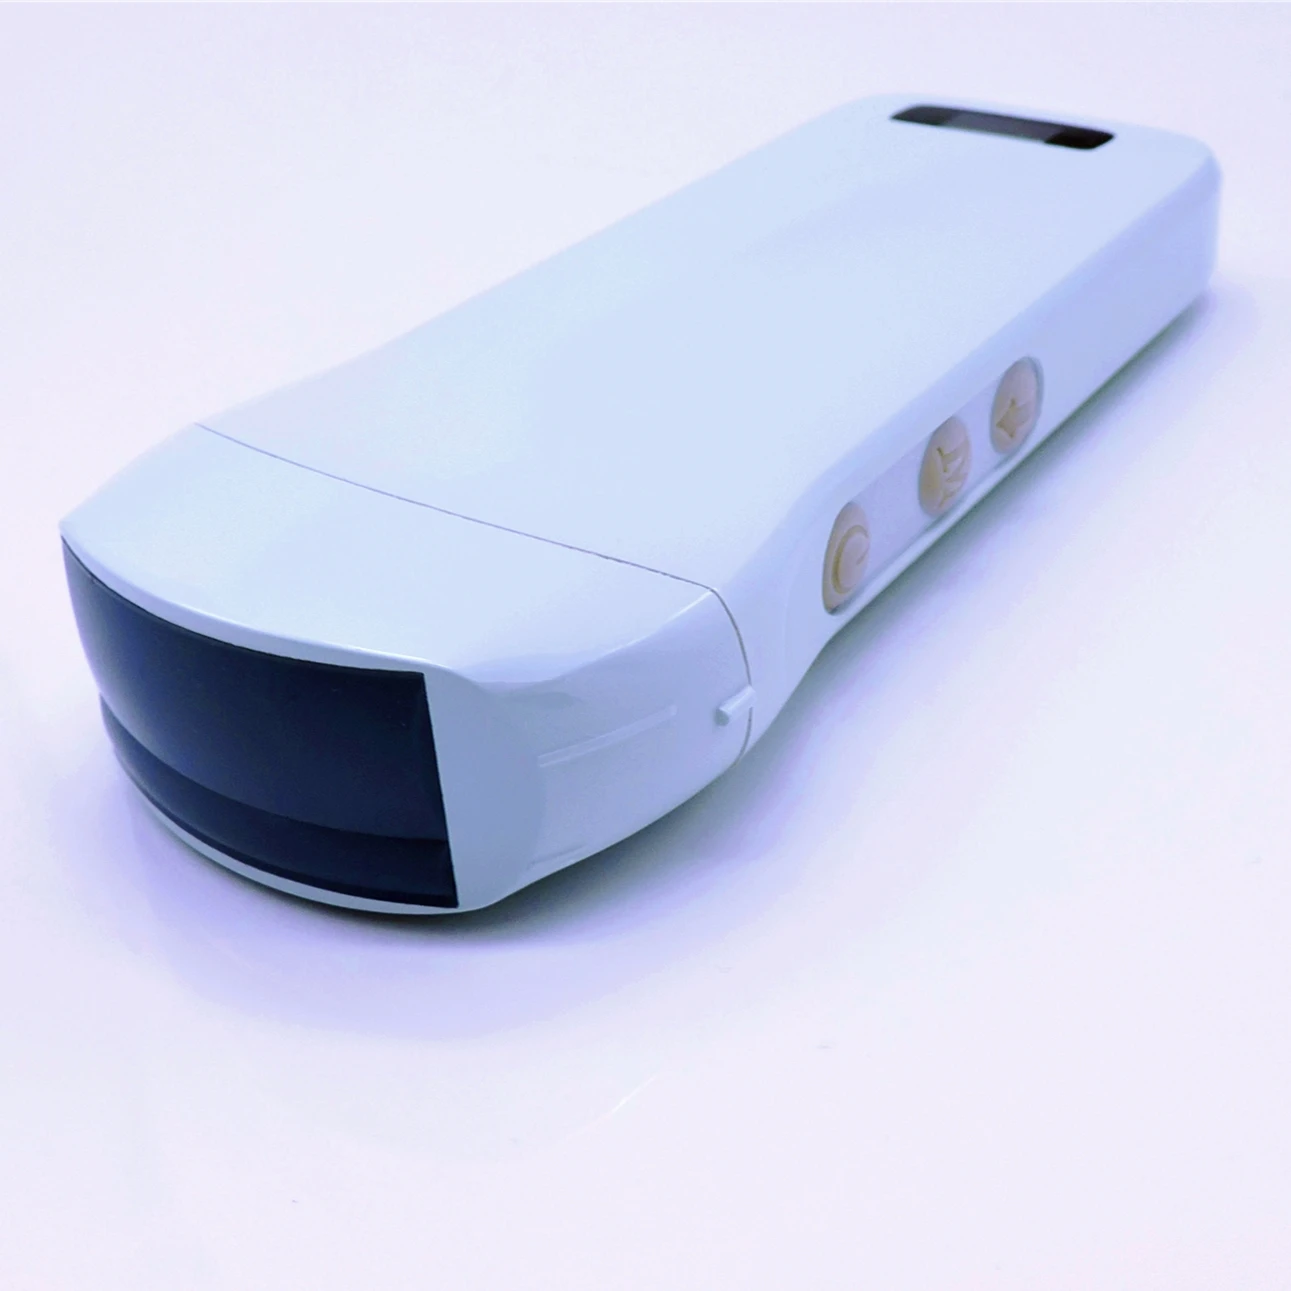 

Портативная беспроводная ультразвуковая машина/сканер Konted C10T